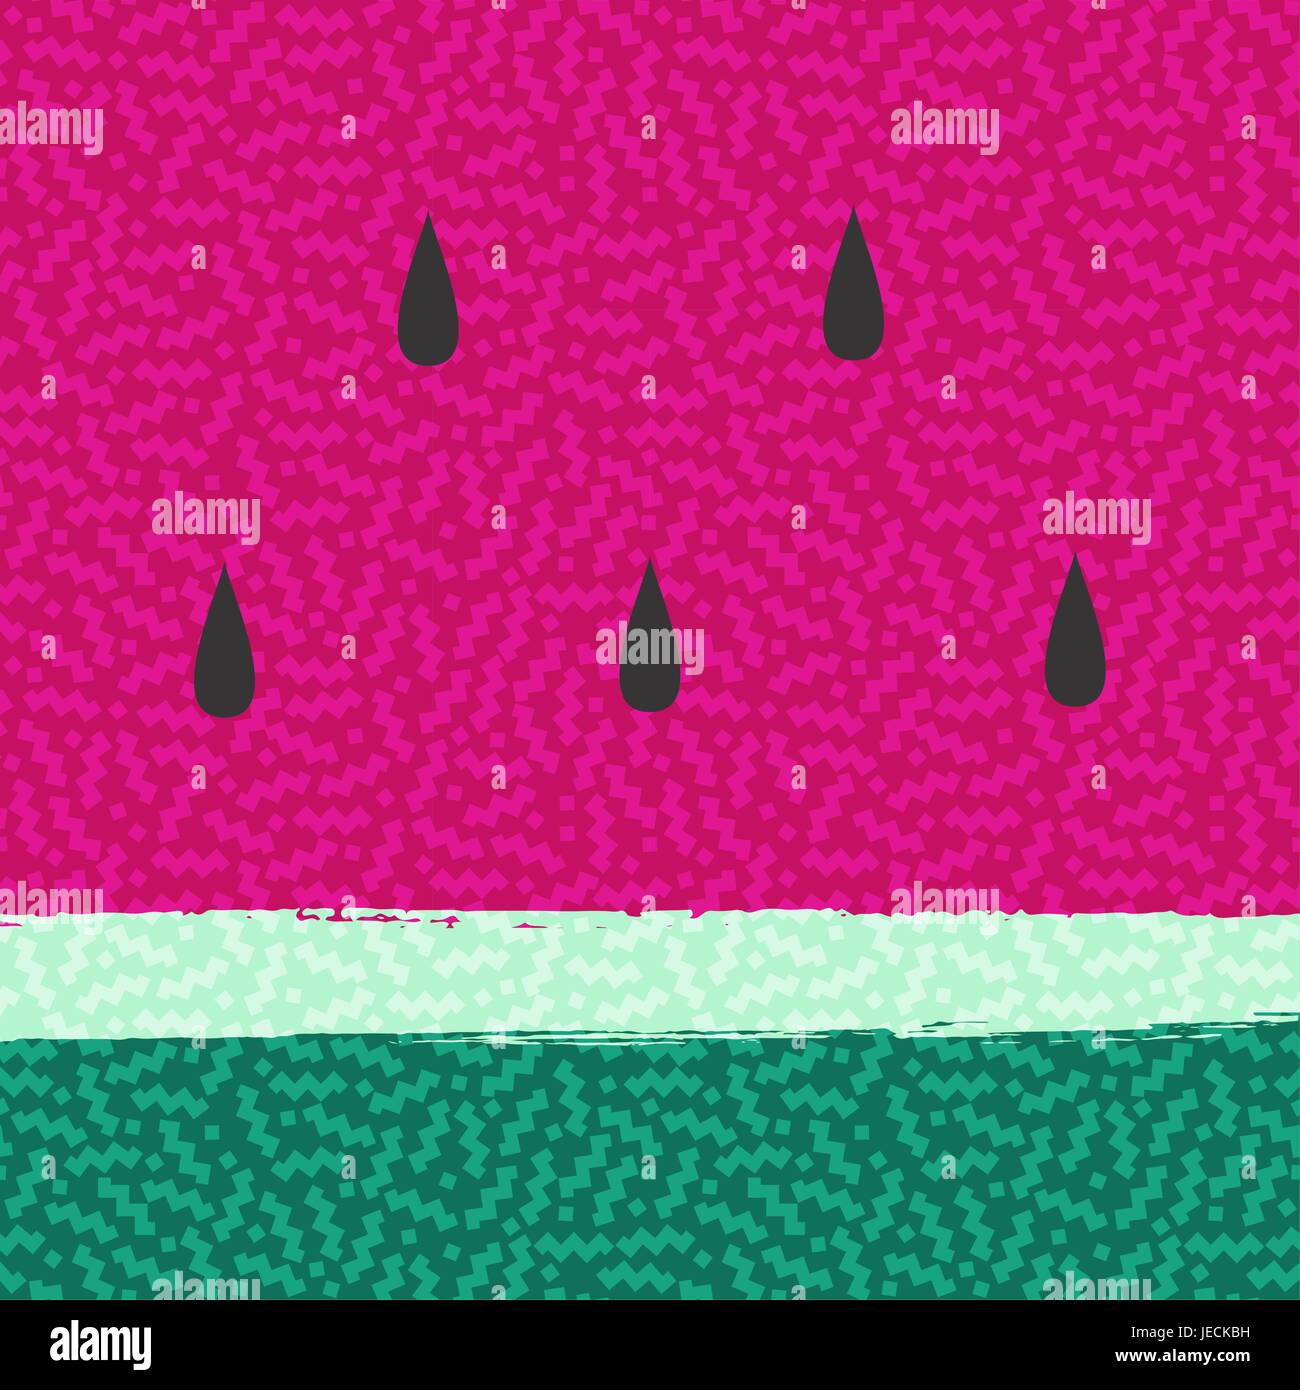 Wassermelone Obst Hintergrund für Sommer-Saison-Design. Bunte abstrakte Memphis Textur Dekoration. EPS10 Vektor. Stock Vektor